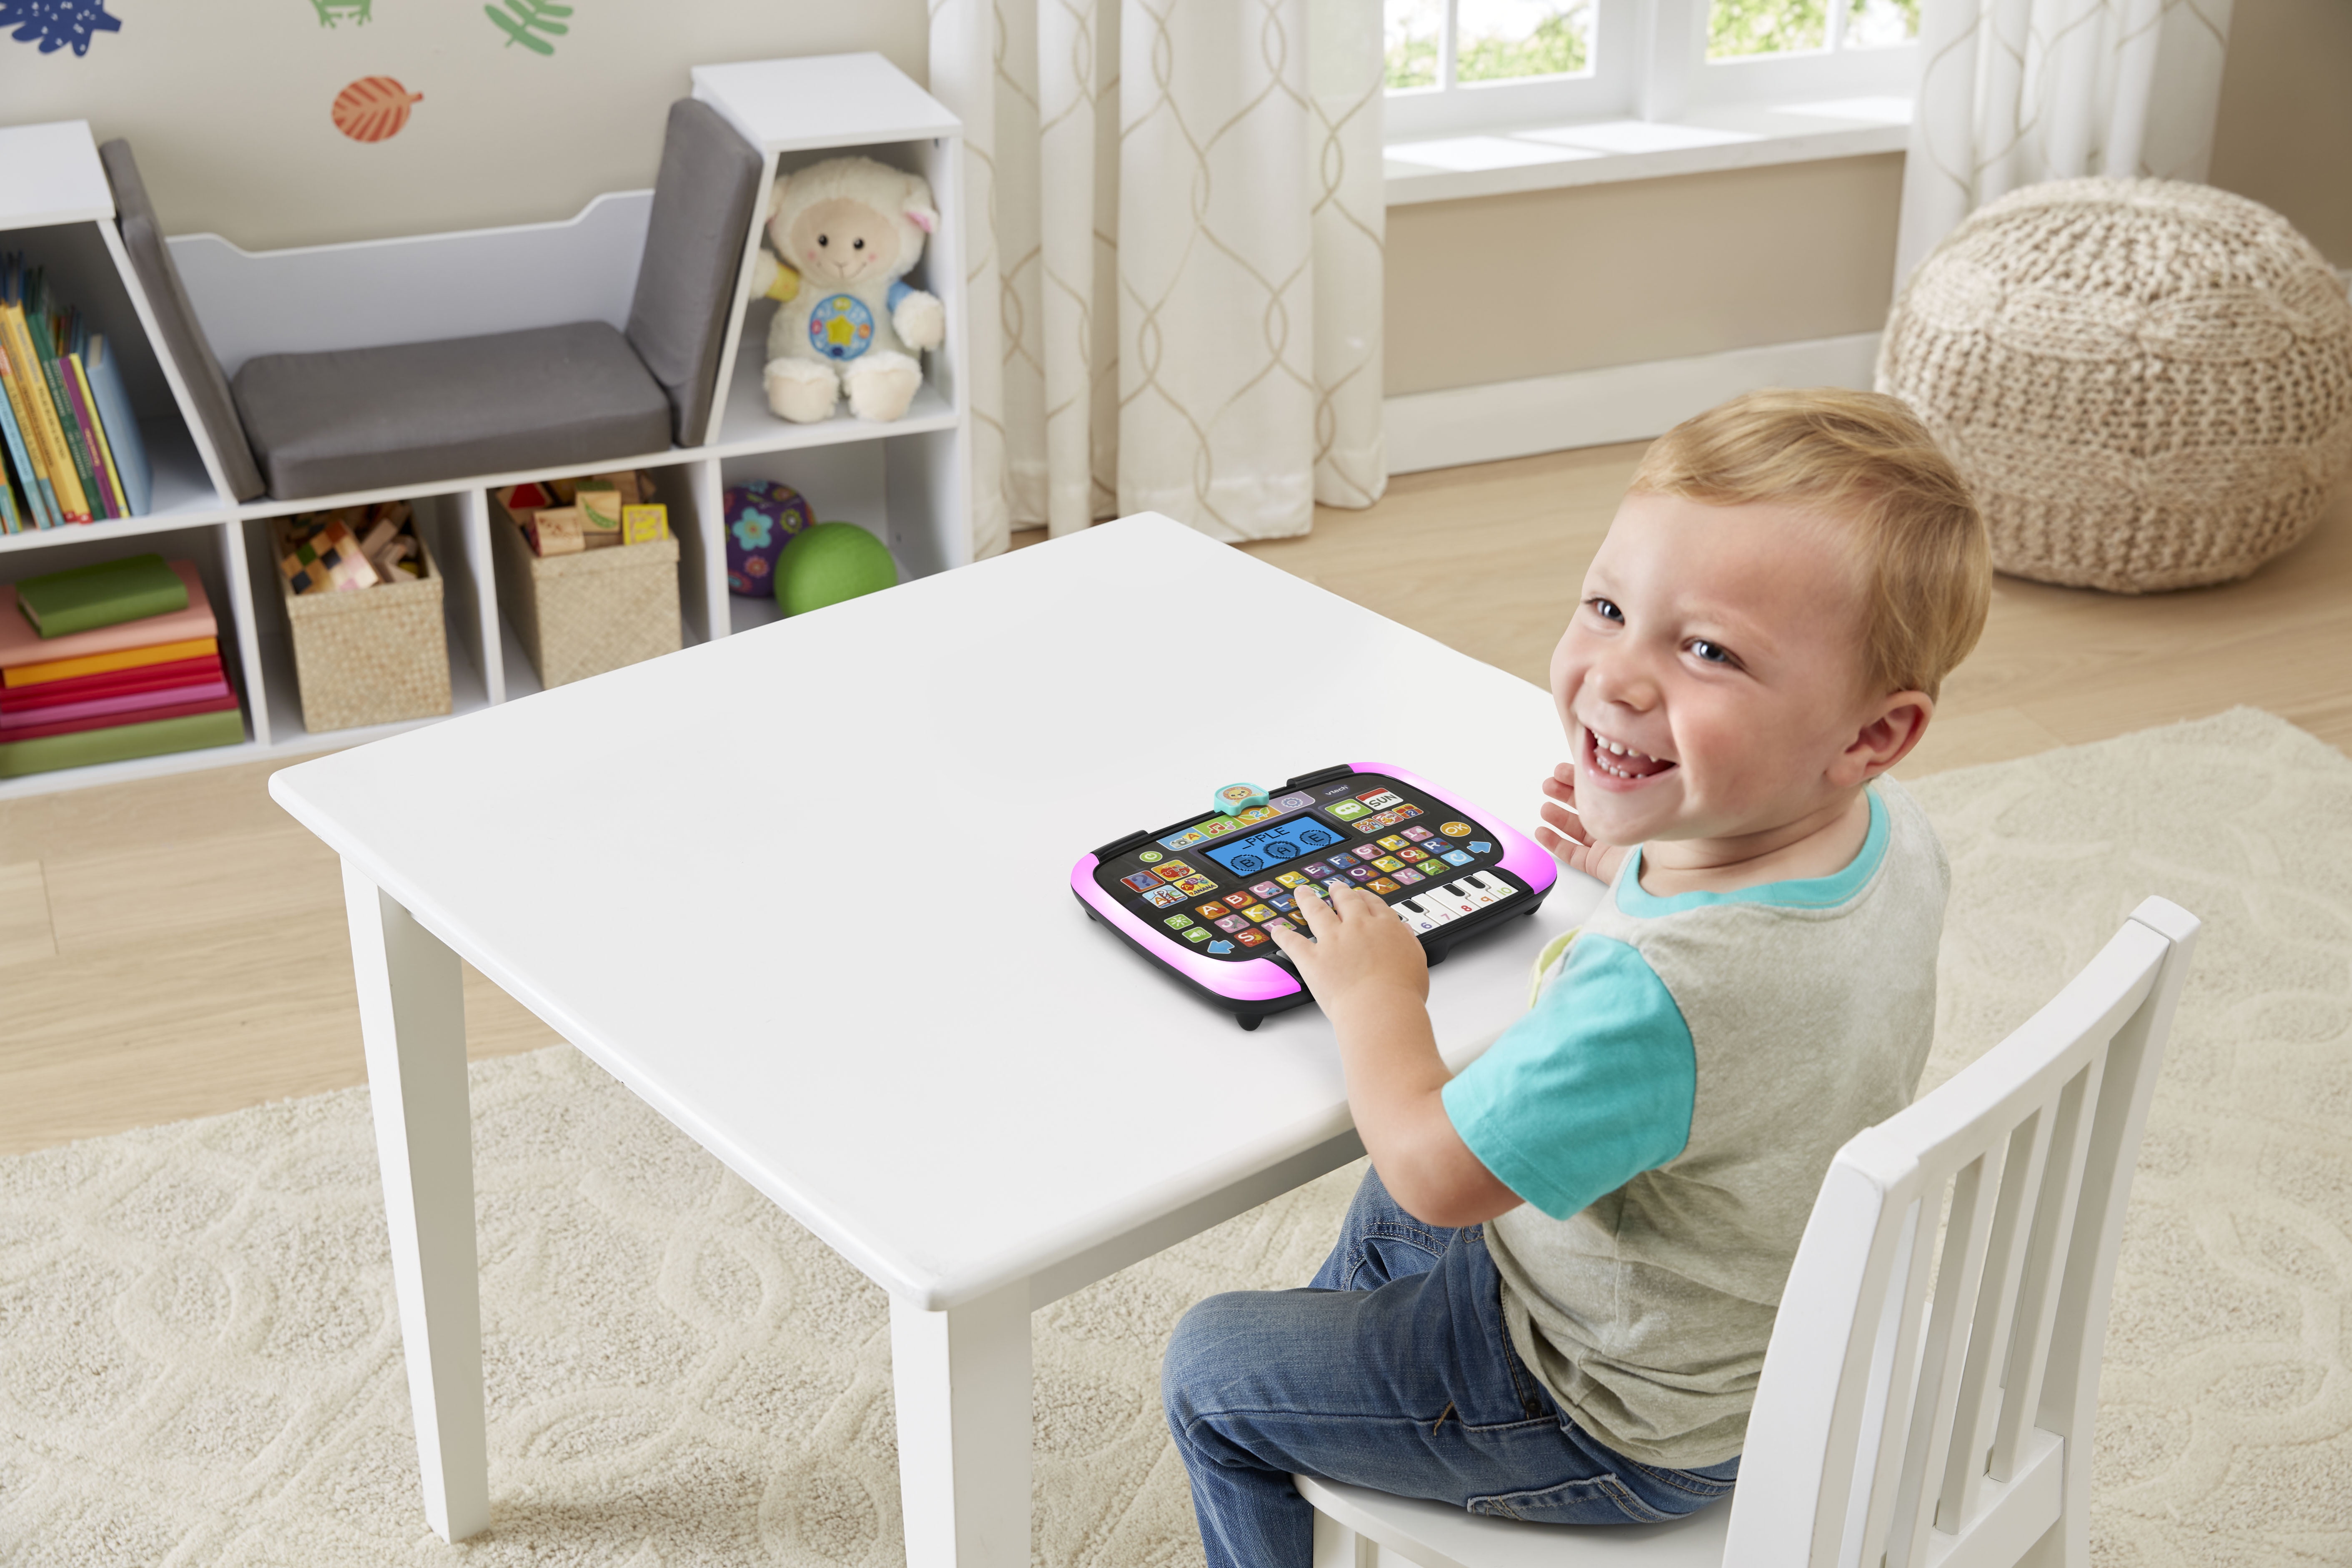 VTech® Little Apps Light-Up Tablet™ for Kids 2-5 Years, Teaches